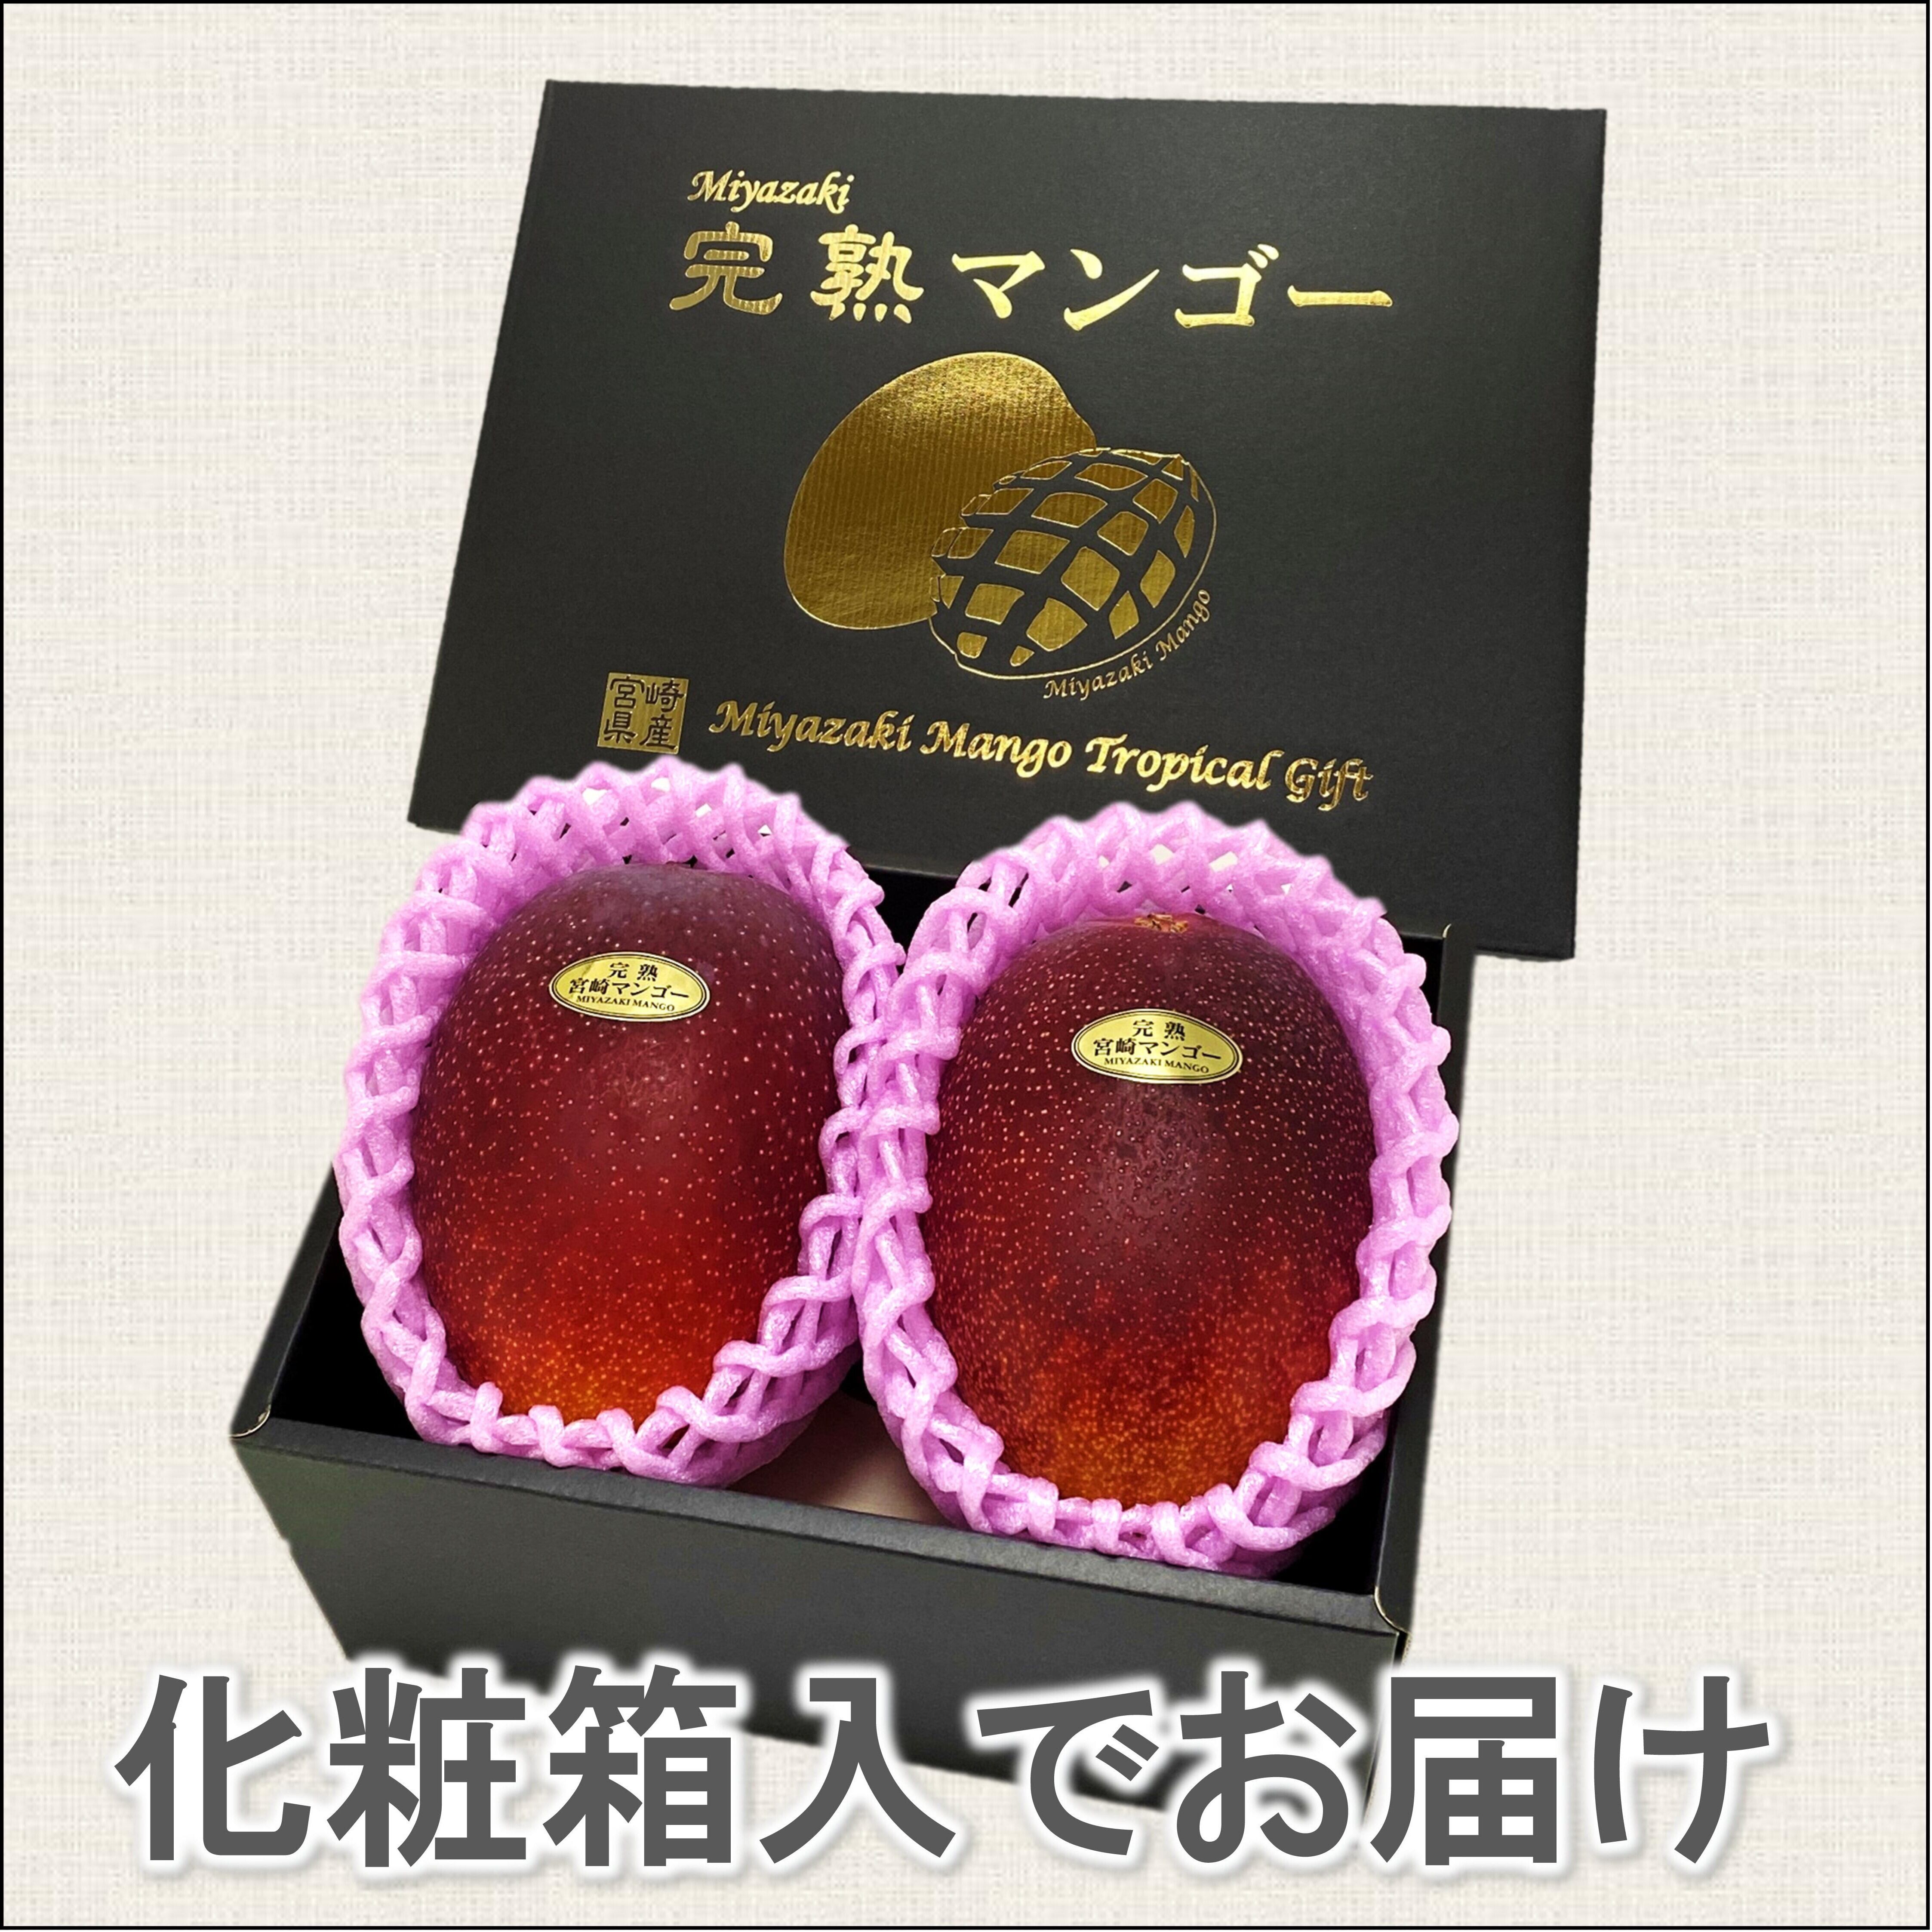 宮崎完熟マンゴー 3Ｌ×2玉 化粧箱入 | はなやか旬市場